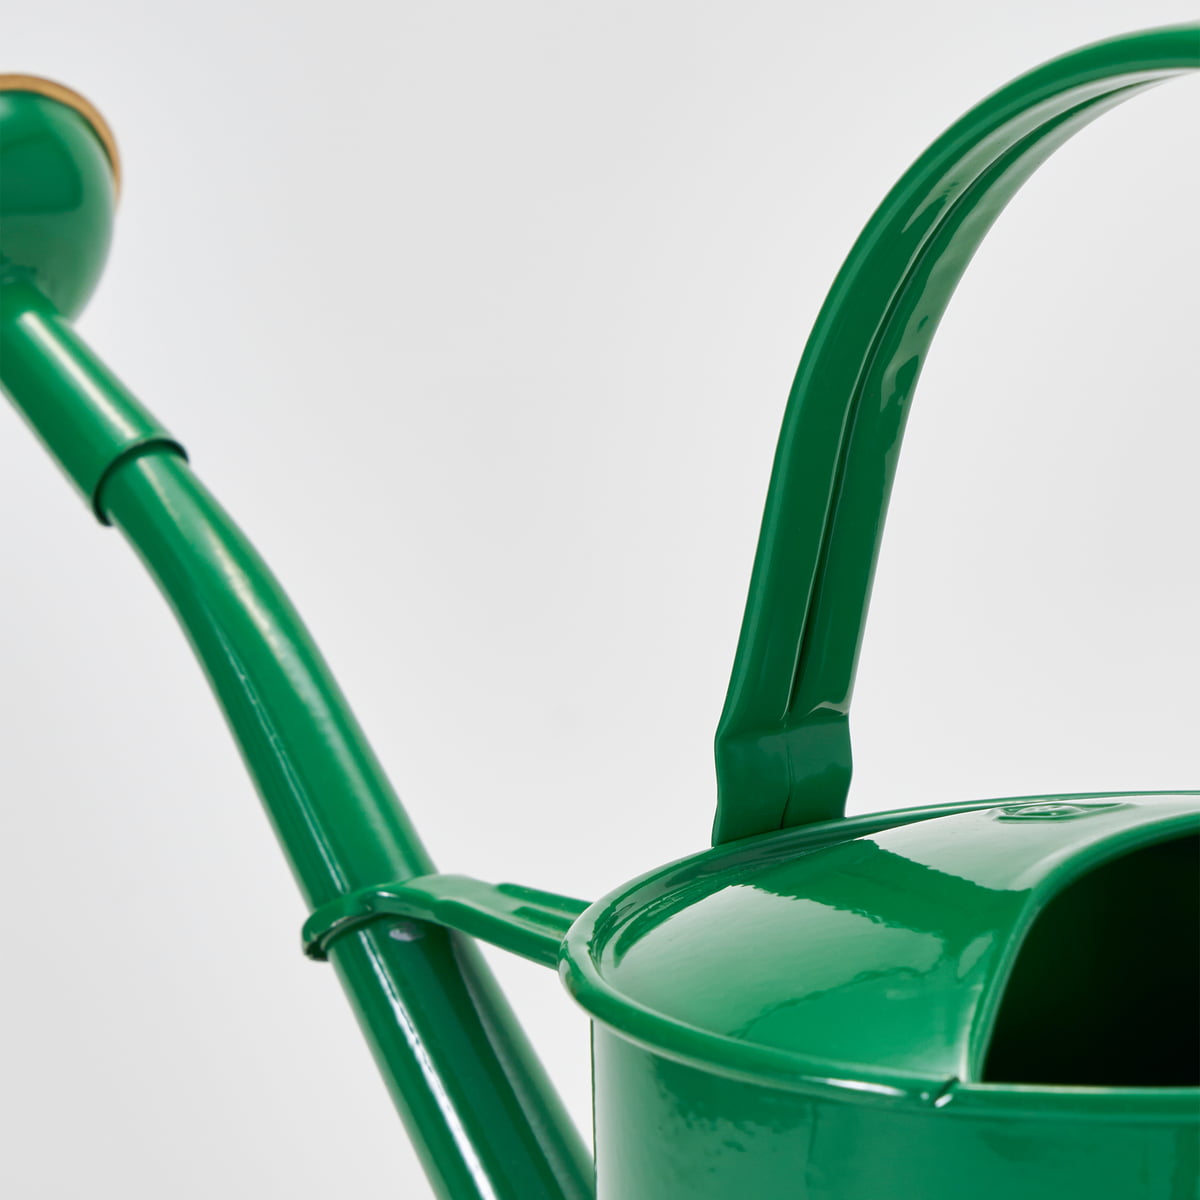 Gießkanne grün 5 Liter – ANNES GARTEN